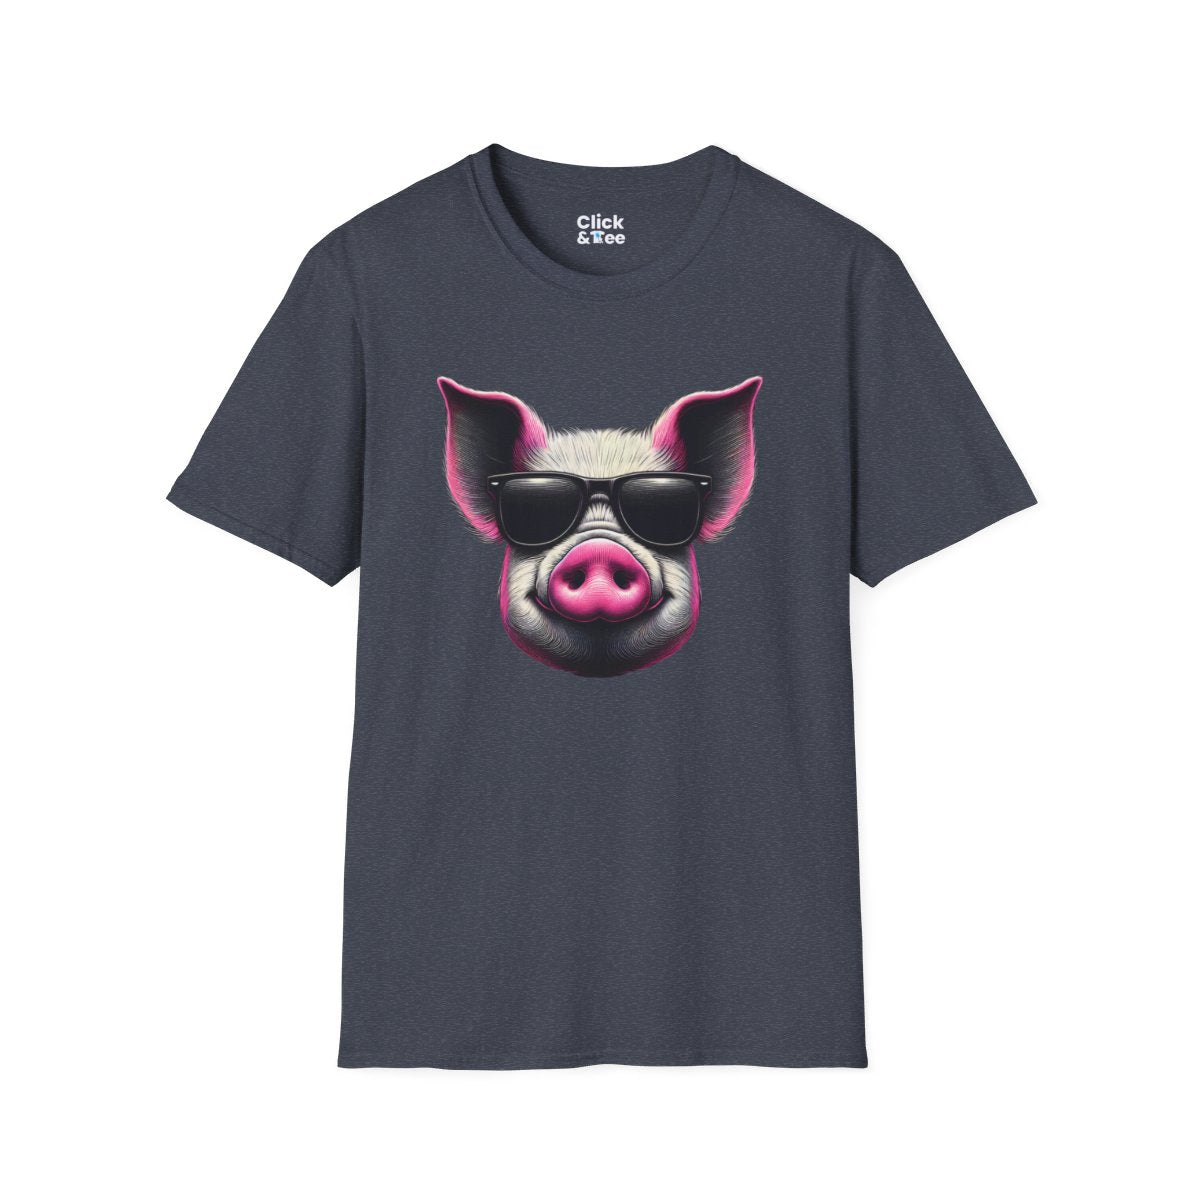 Graphic ArtPink Pig Face Unique T-Shirt Image 19